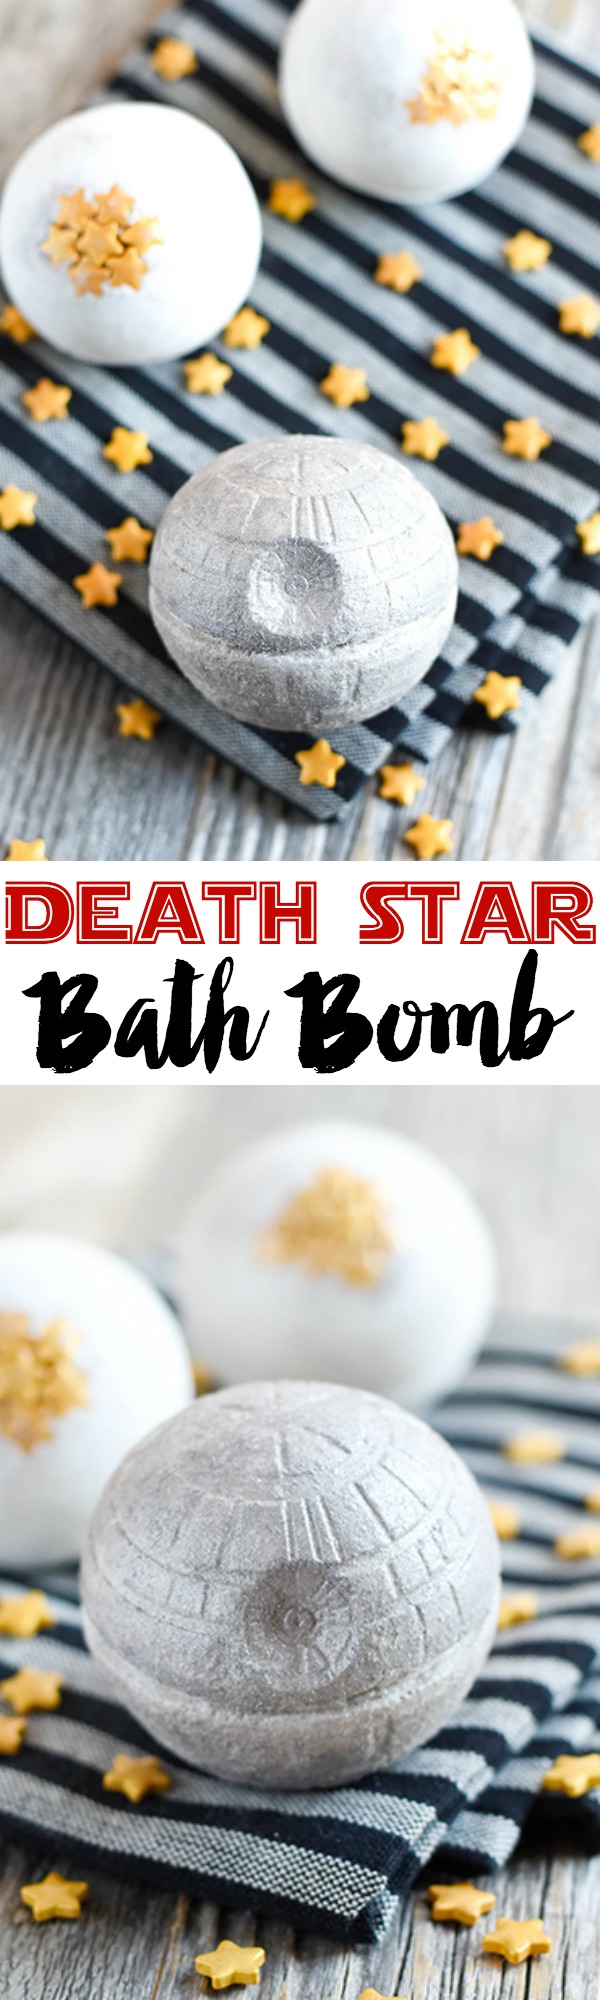 DIY Death Star Bath Bomb Tutorial - DIY Bath Bomb Recipes | Fun DIY Projects for Teens